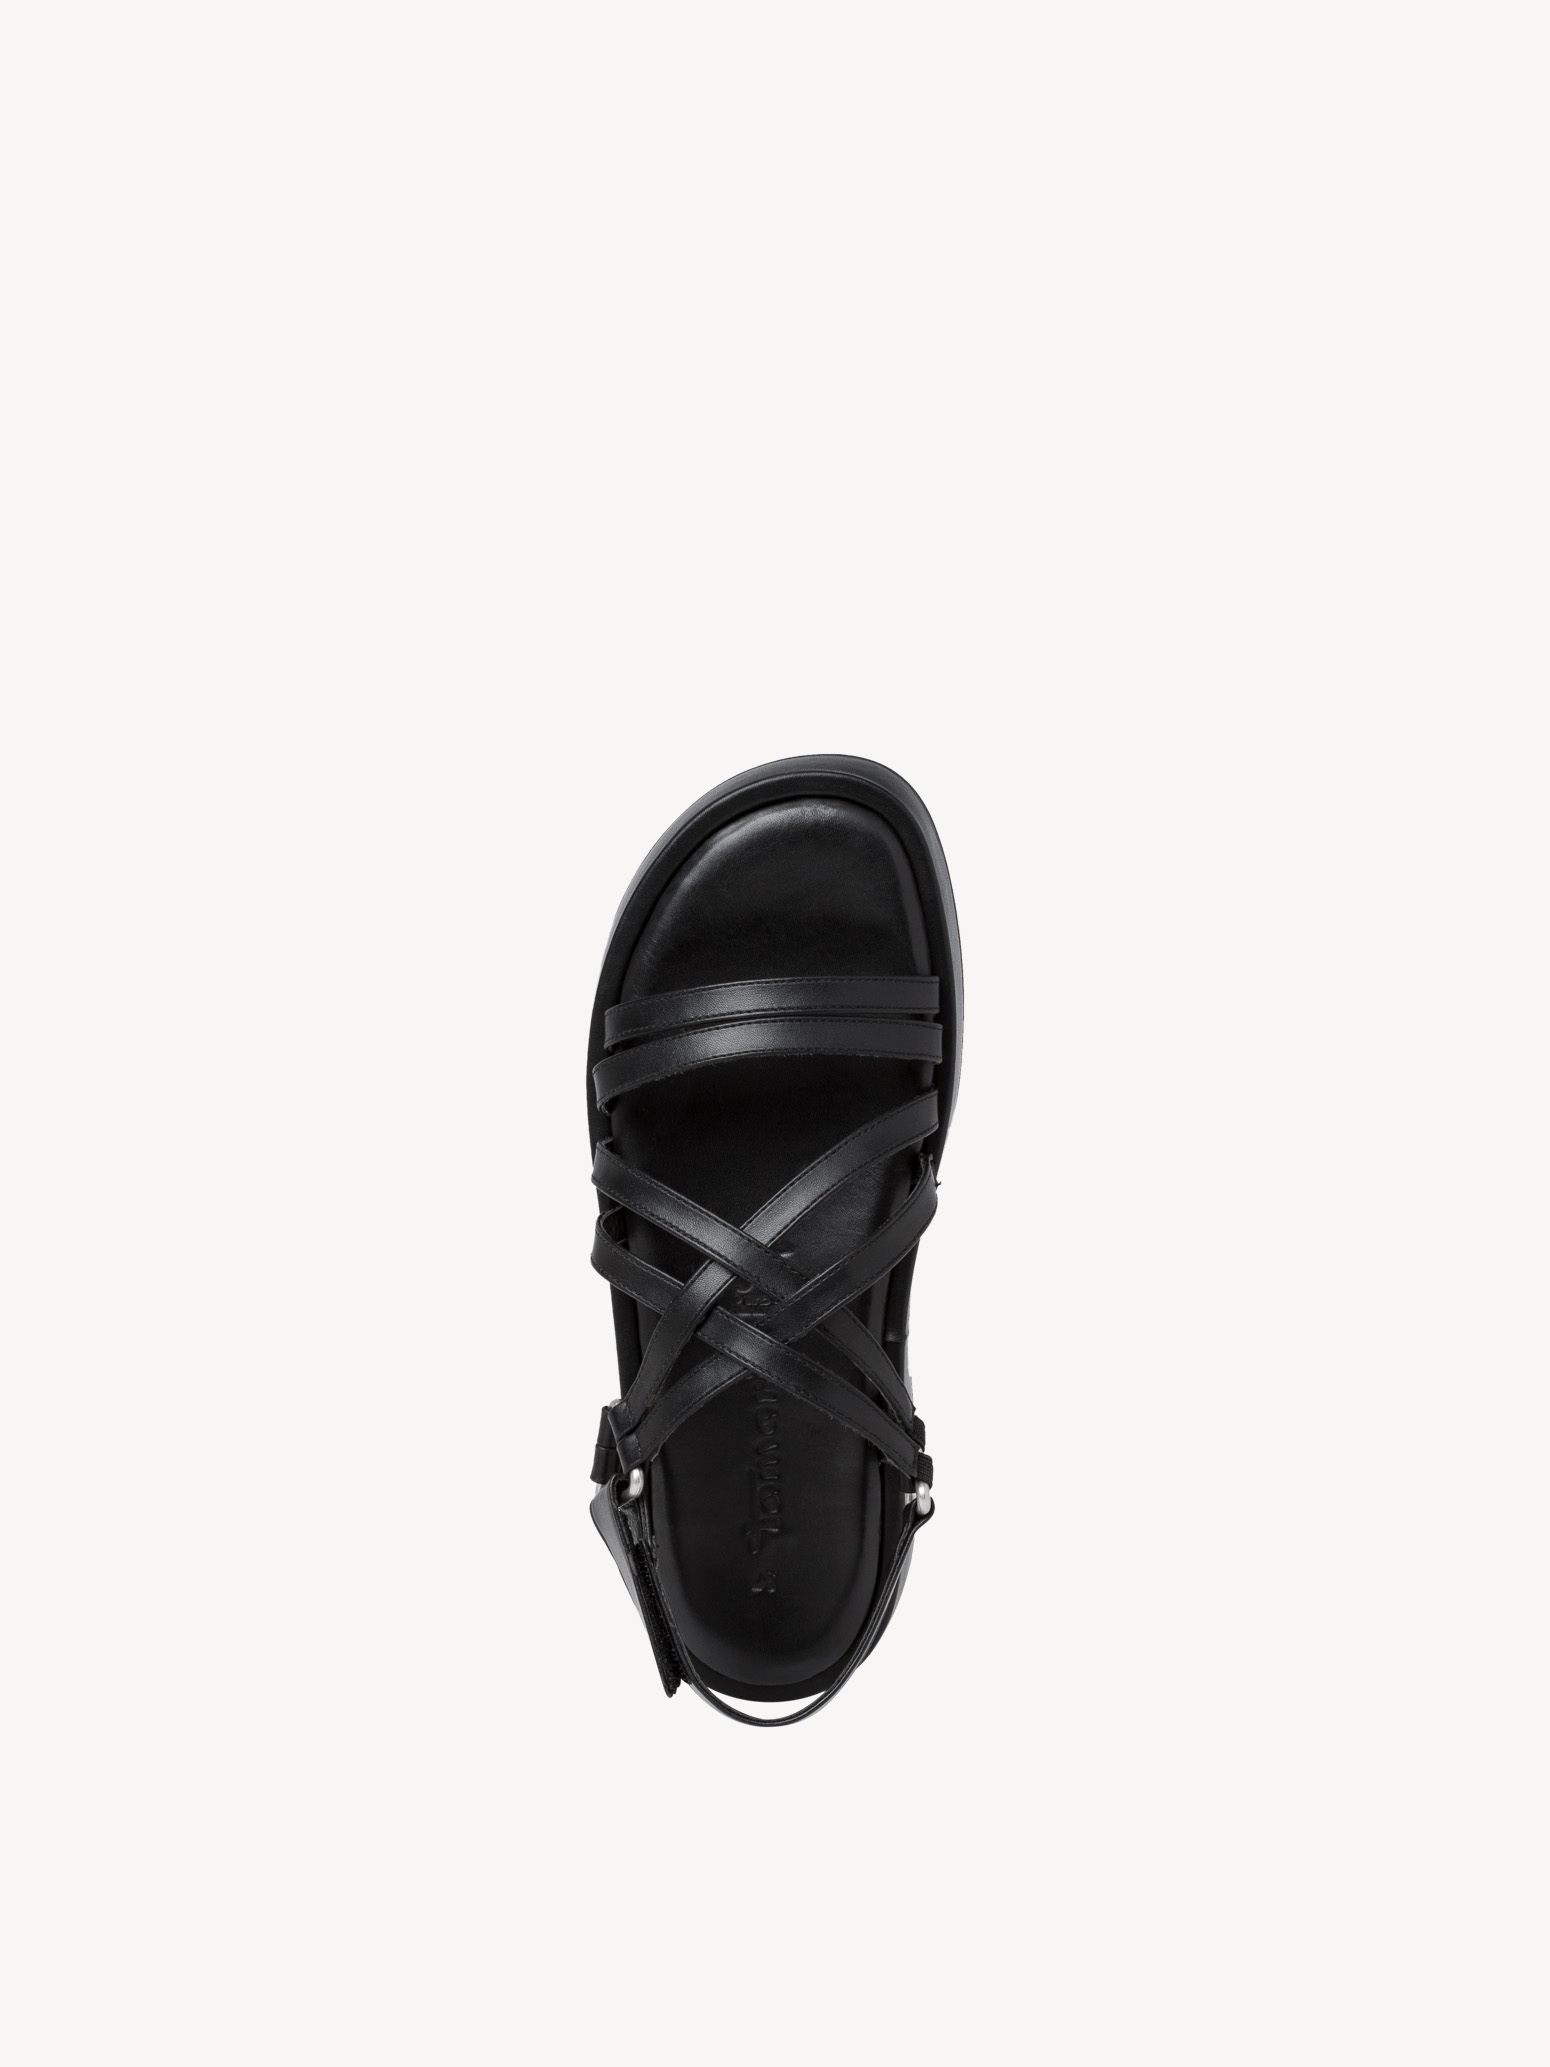 Sandal - black, BLACK, hi-res